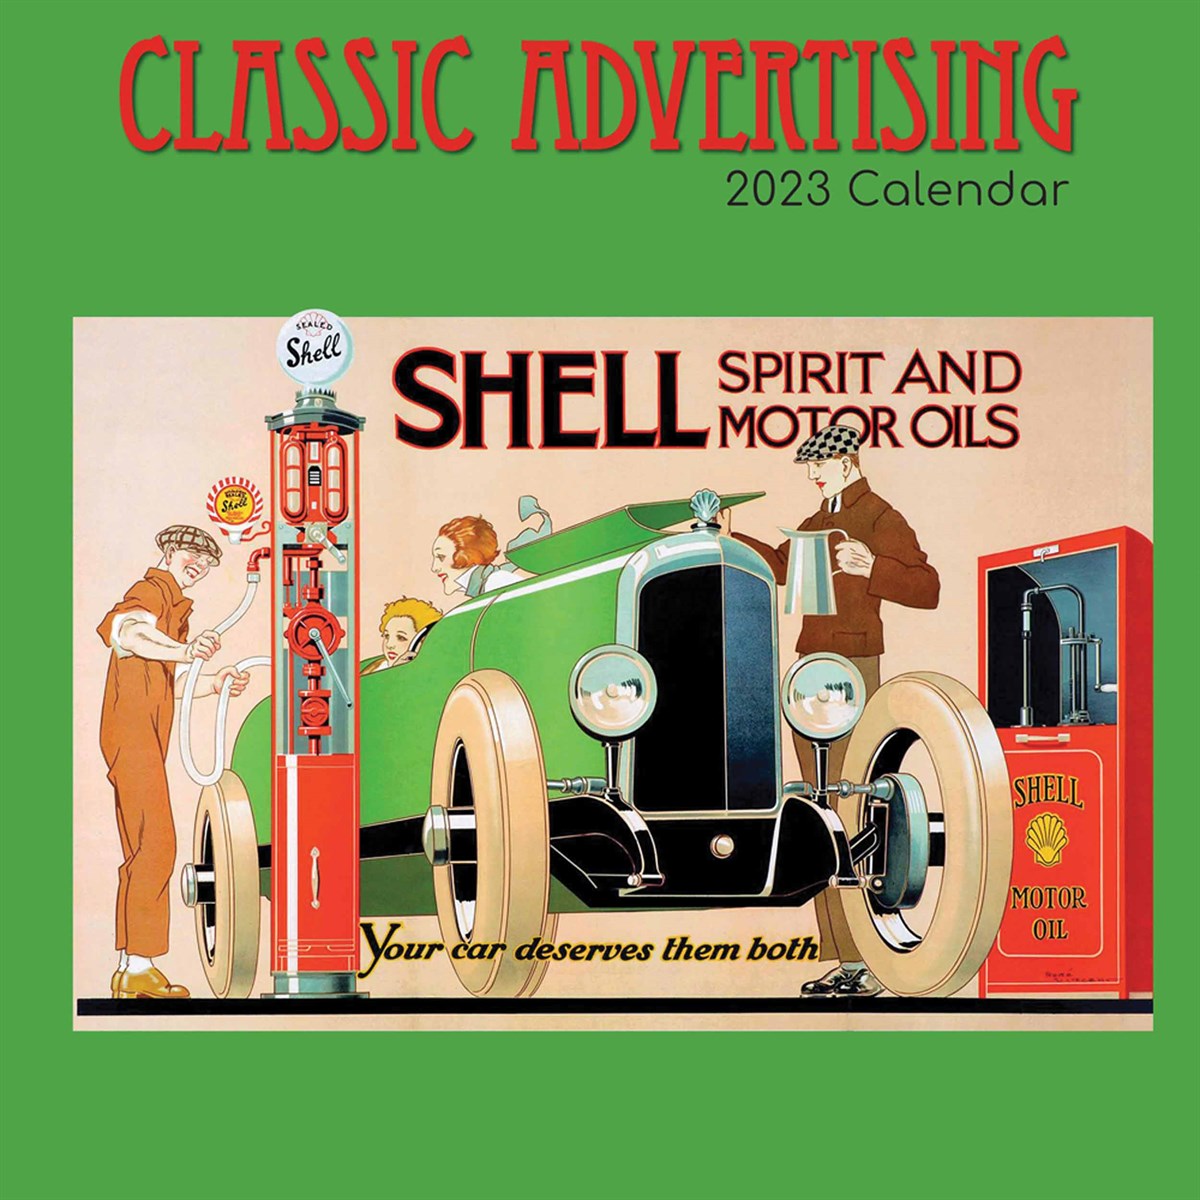 Classic Advertising 2023 Calendars